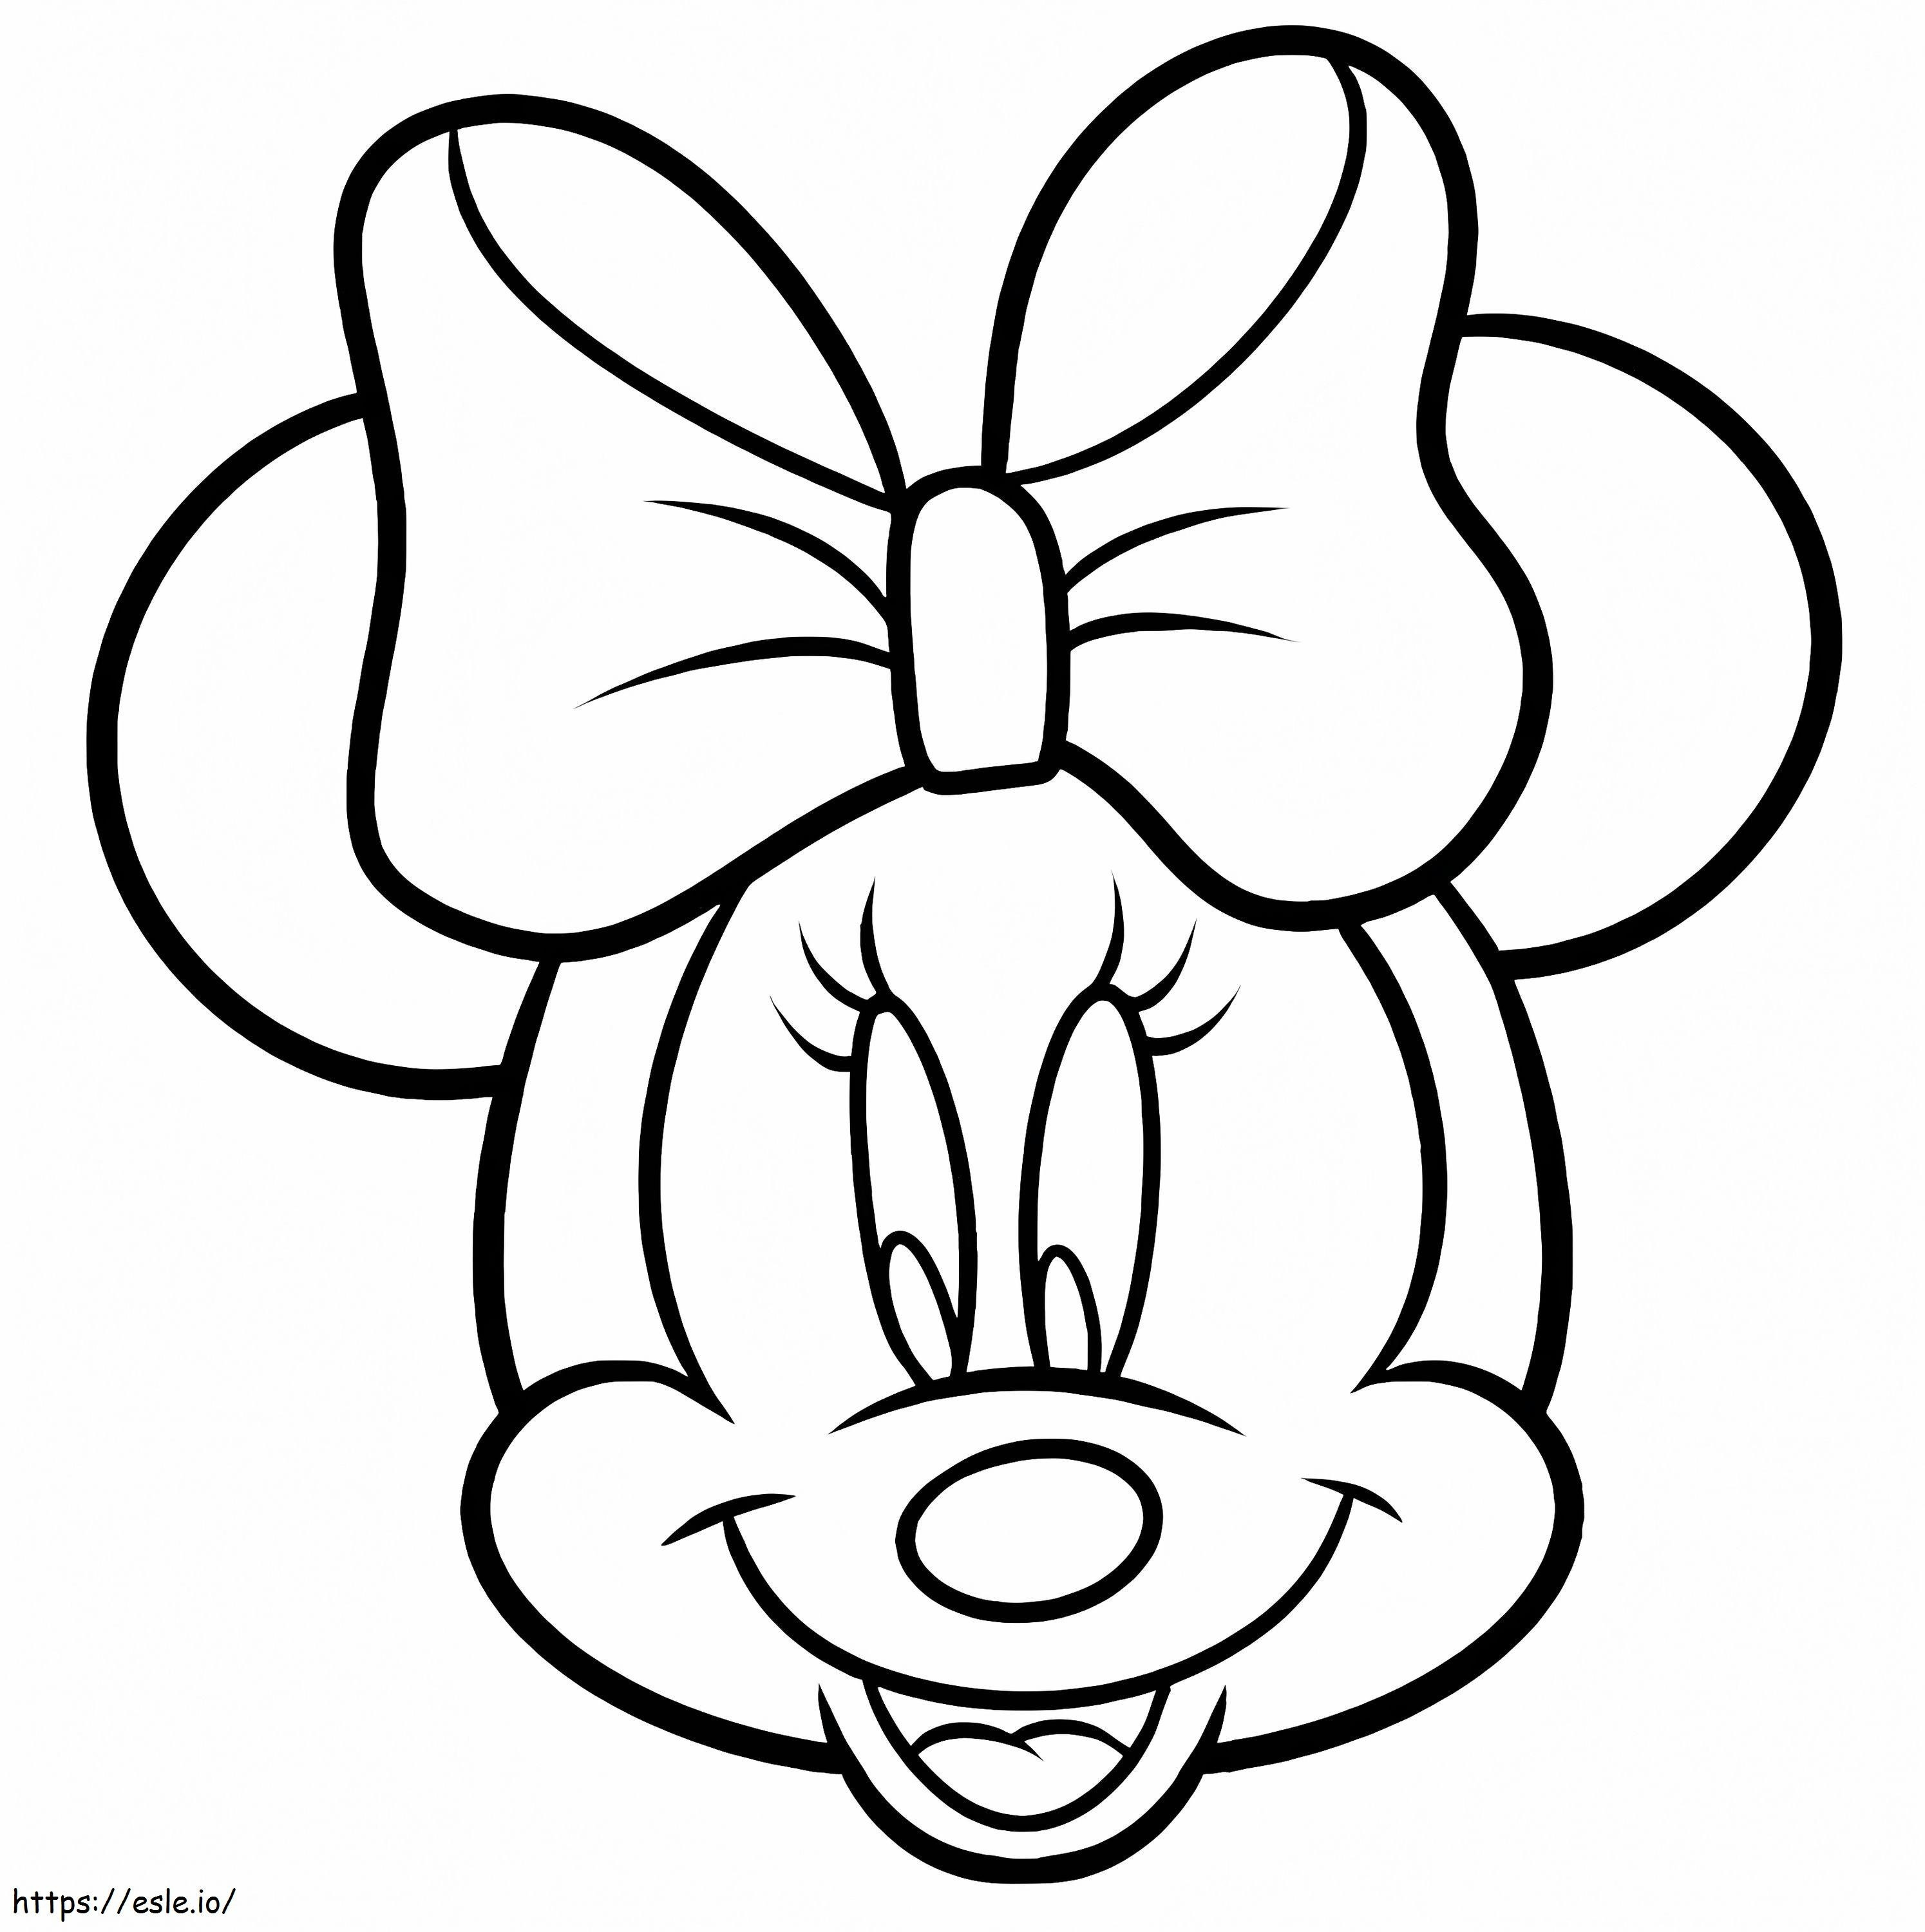 Cara de Minnie Mouse para colorear